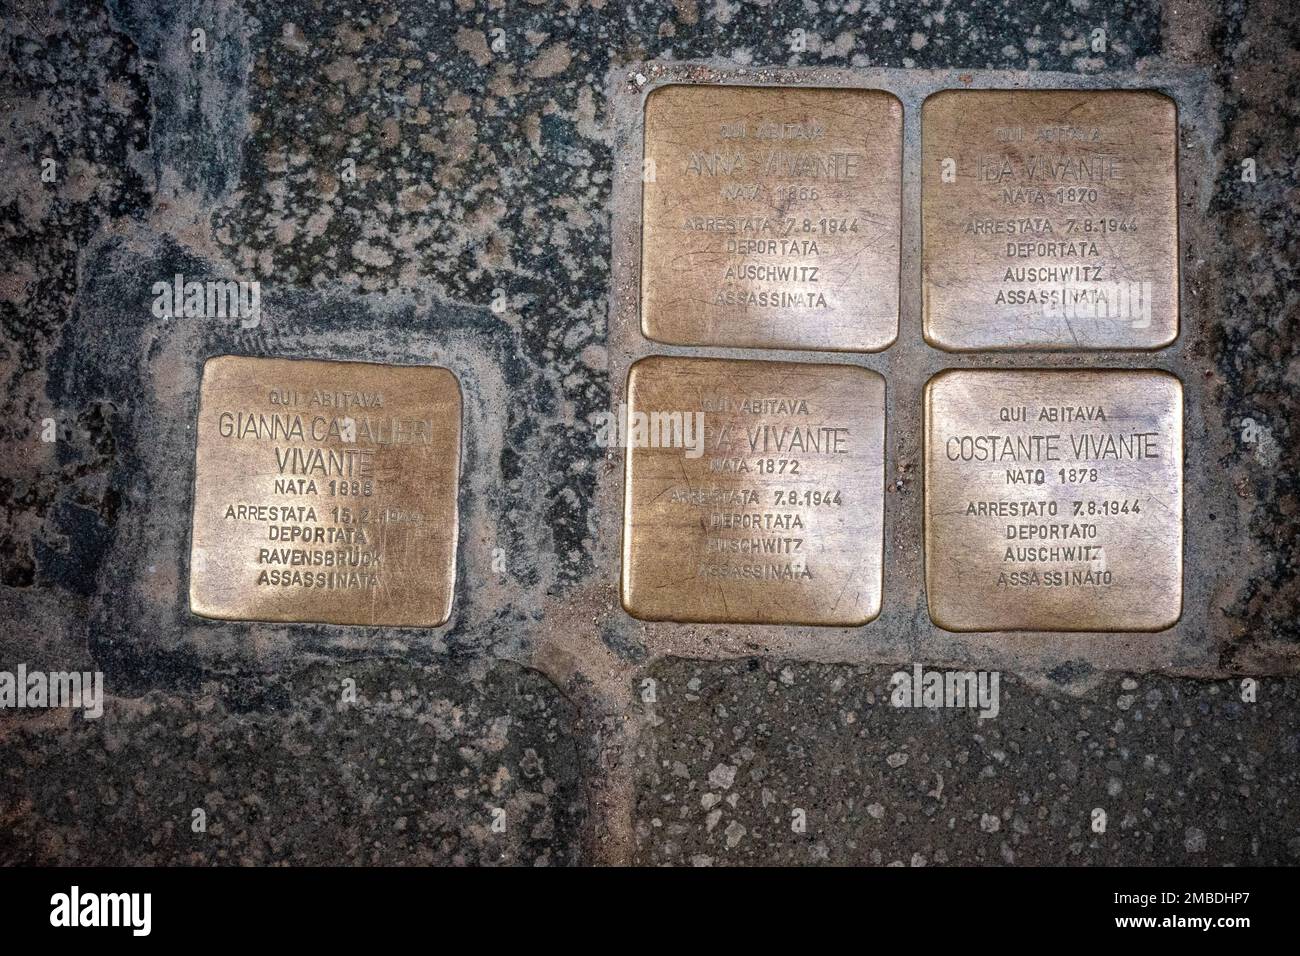 Placche quadrate di rame, Stolperstein, che notano persone tra cui ebrei inviate al campo di concentramento nazista ad Auschwitz, Kralo, Polonia per essere sterminate. Foto Stock